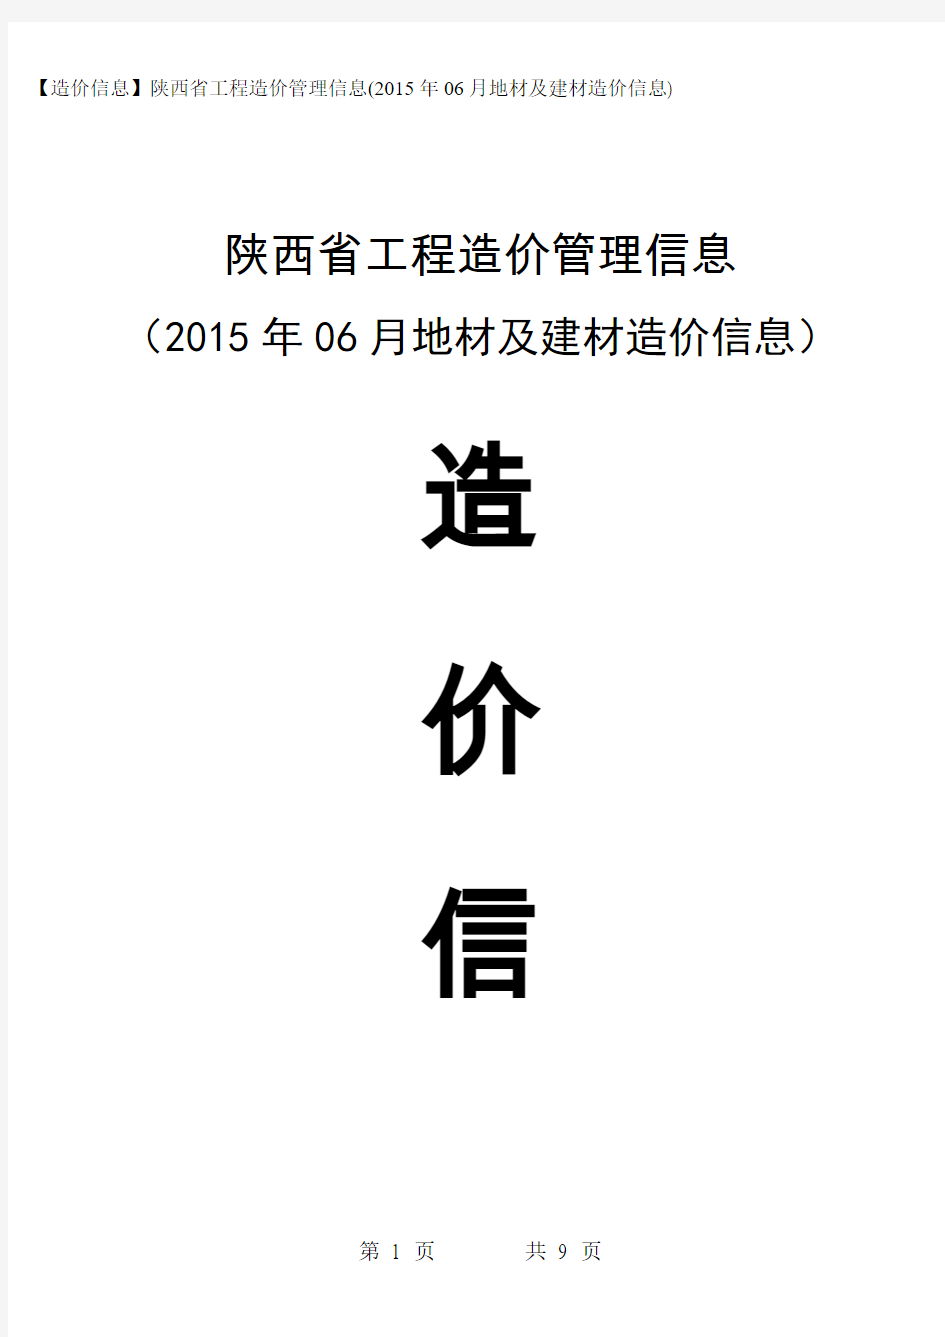 【造价信息】陕西省工程造价管理信息(2015年06月地材及建材造价信息)